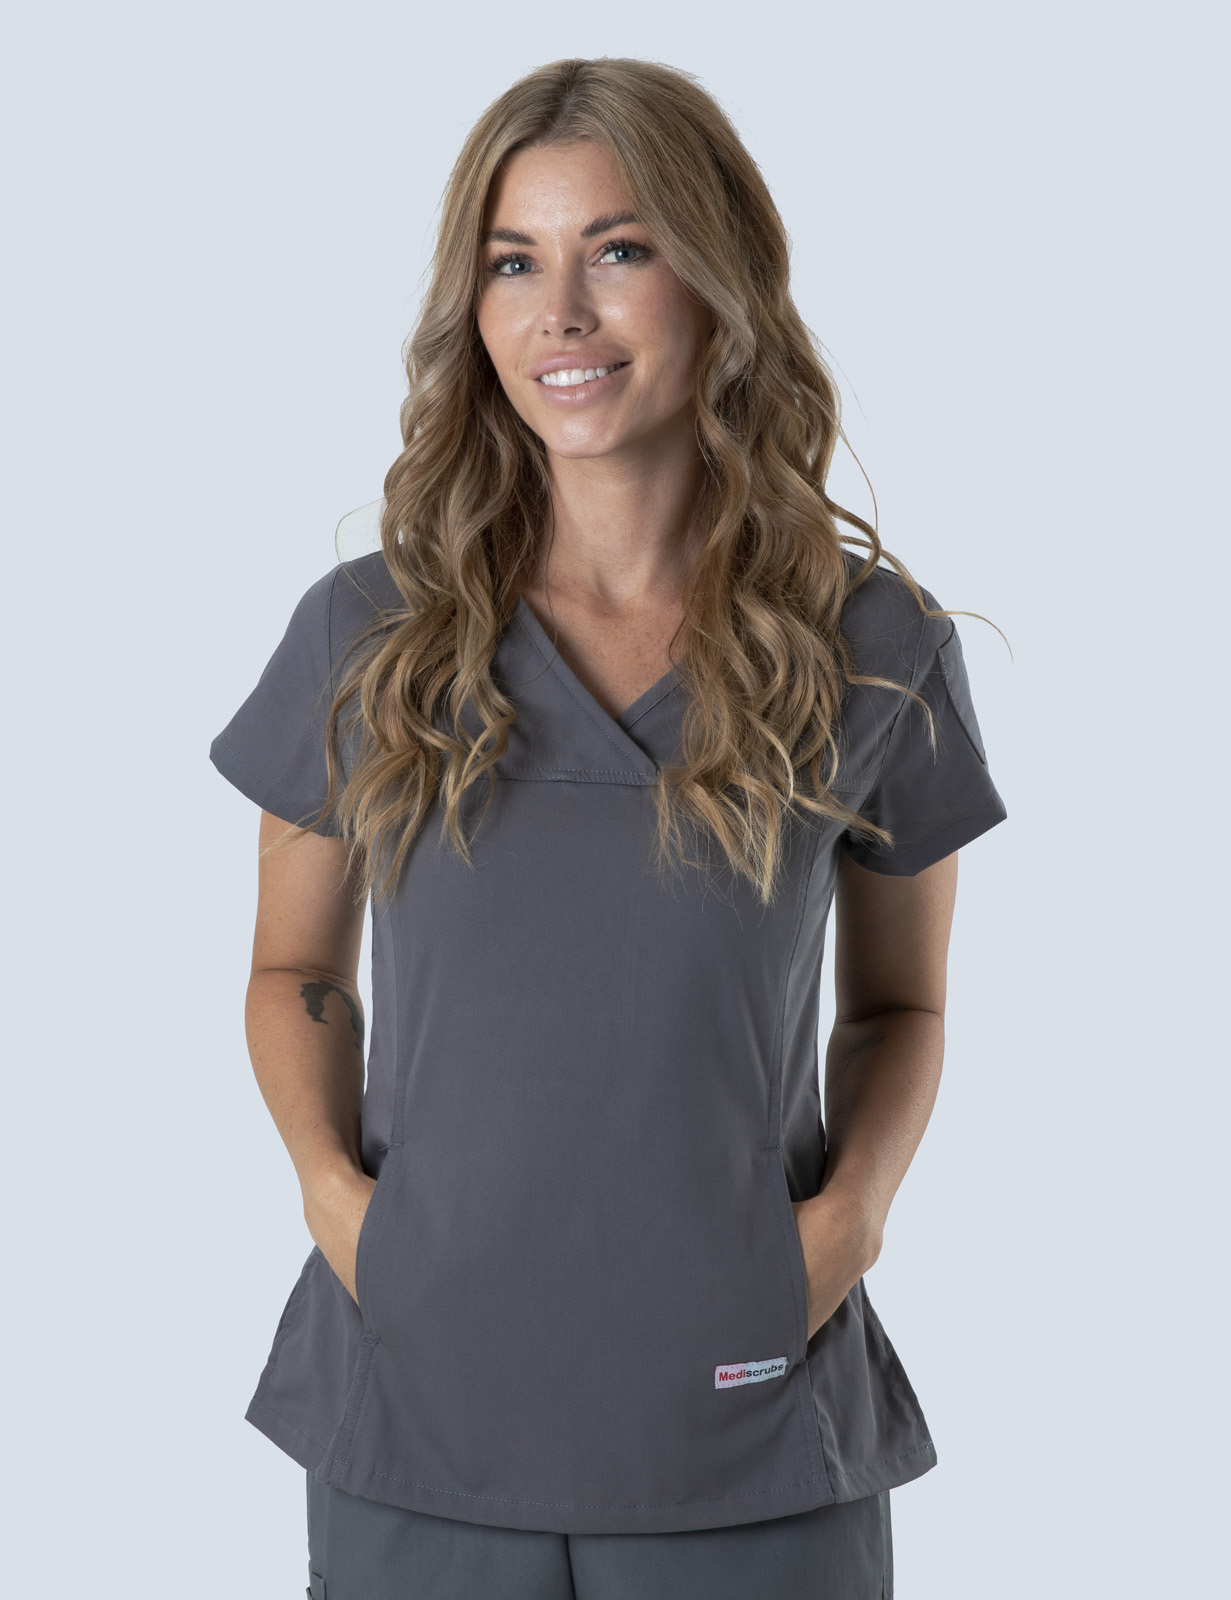 Queensland Children's Hospital Emergency Department Doctor Uniform Top Bundle (Women's Fit Top in Steel Grey  incl Logos)